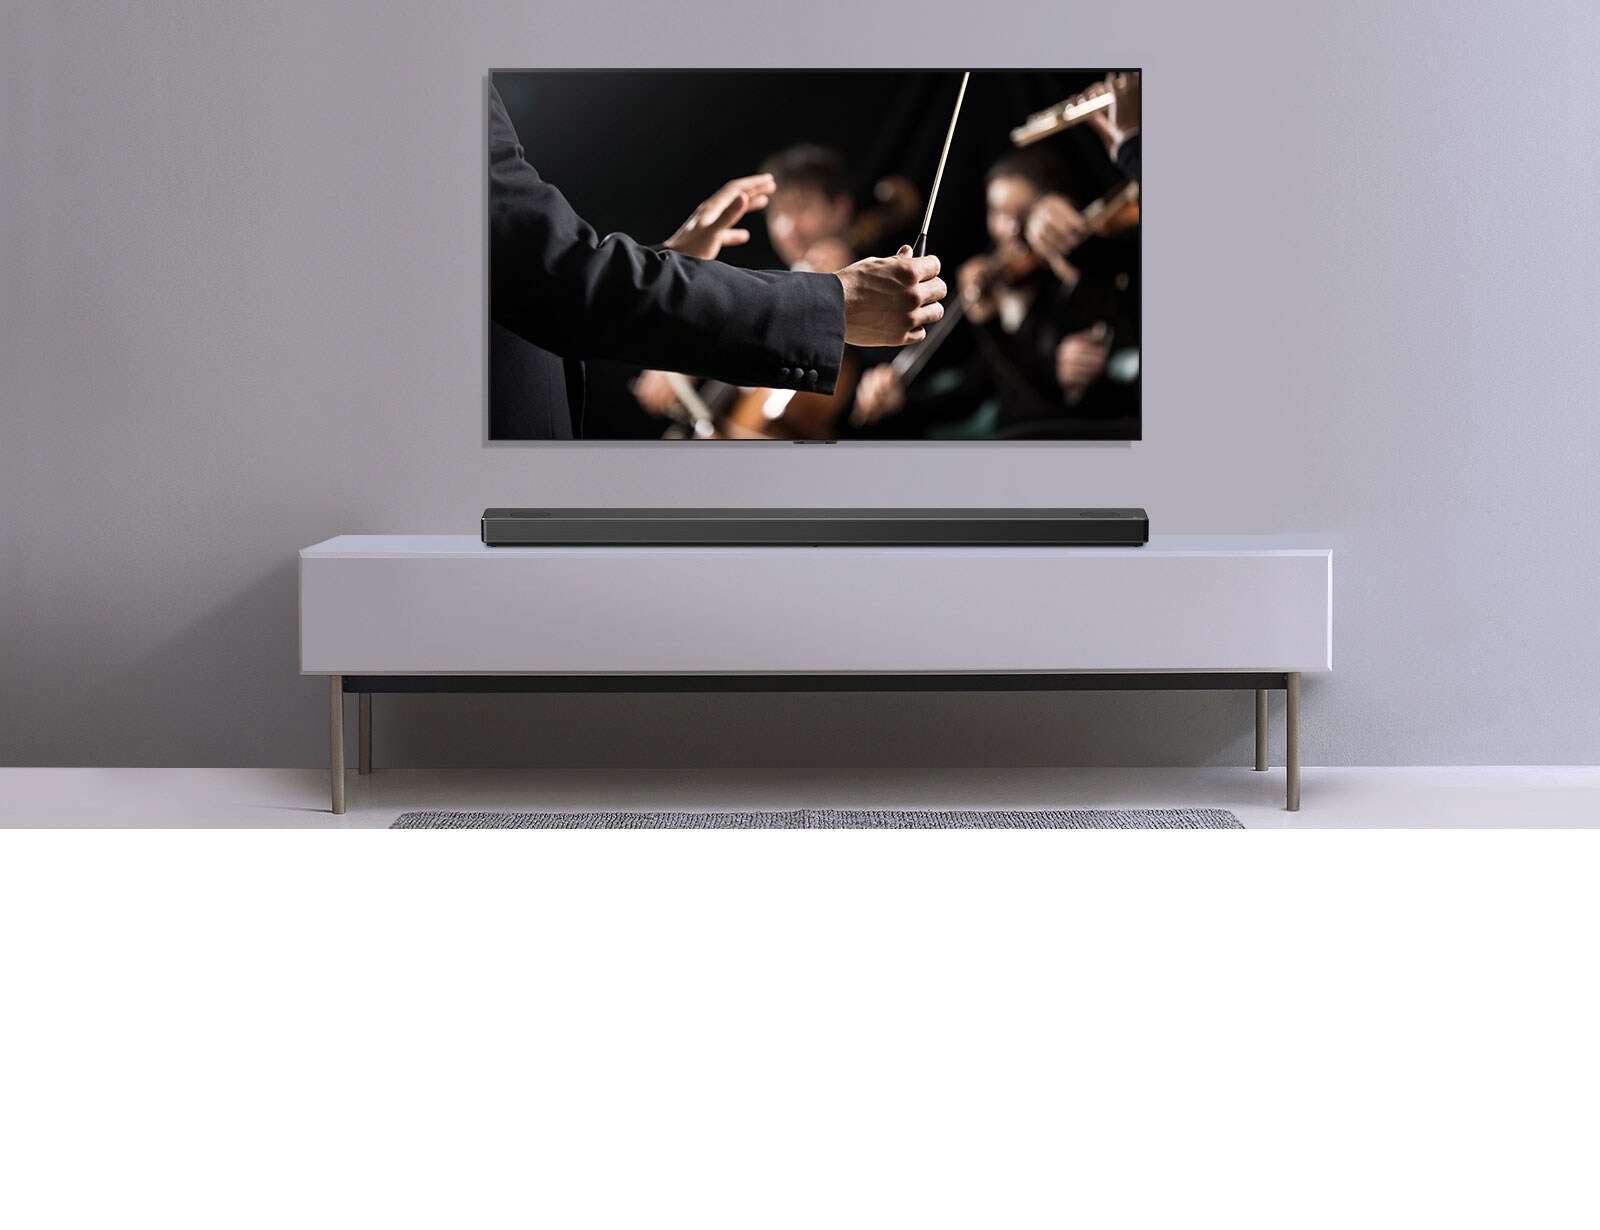 טלוויזיה מוצגת על קיר אפור והסאונד-בר מבית LG מונח מתחתיה על מזנון אפור. טלוויזיה מציגה מנצח תזמורת.